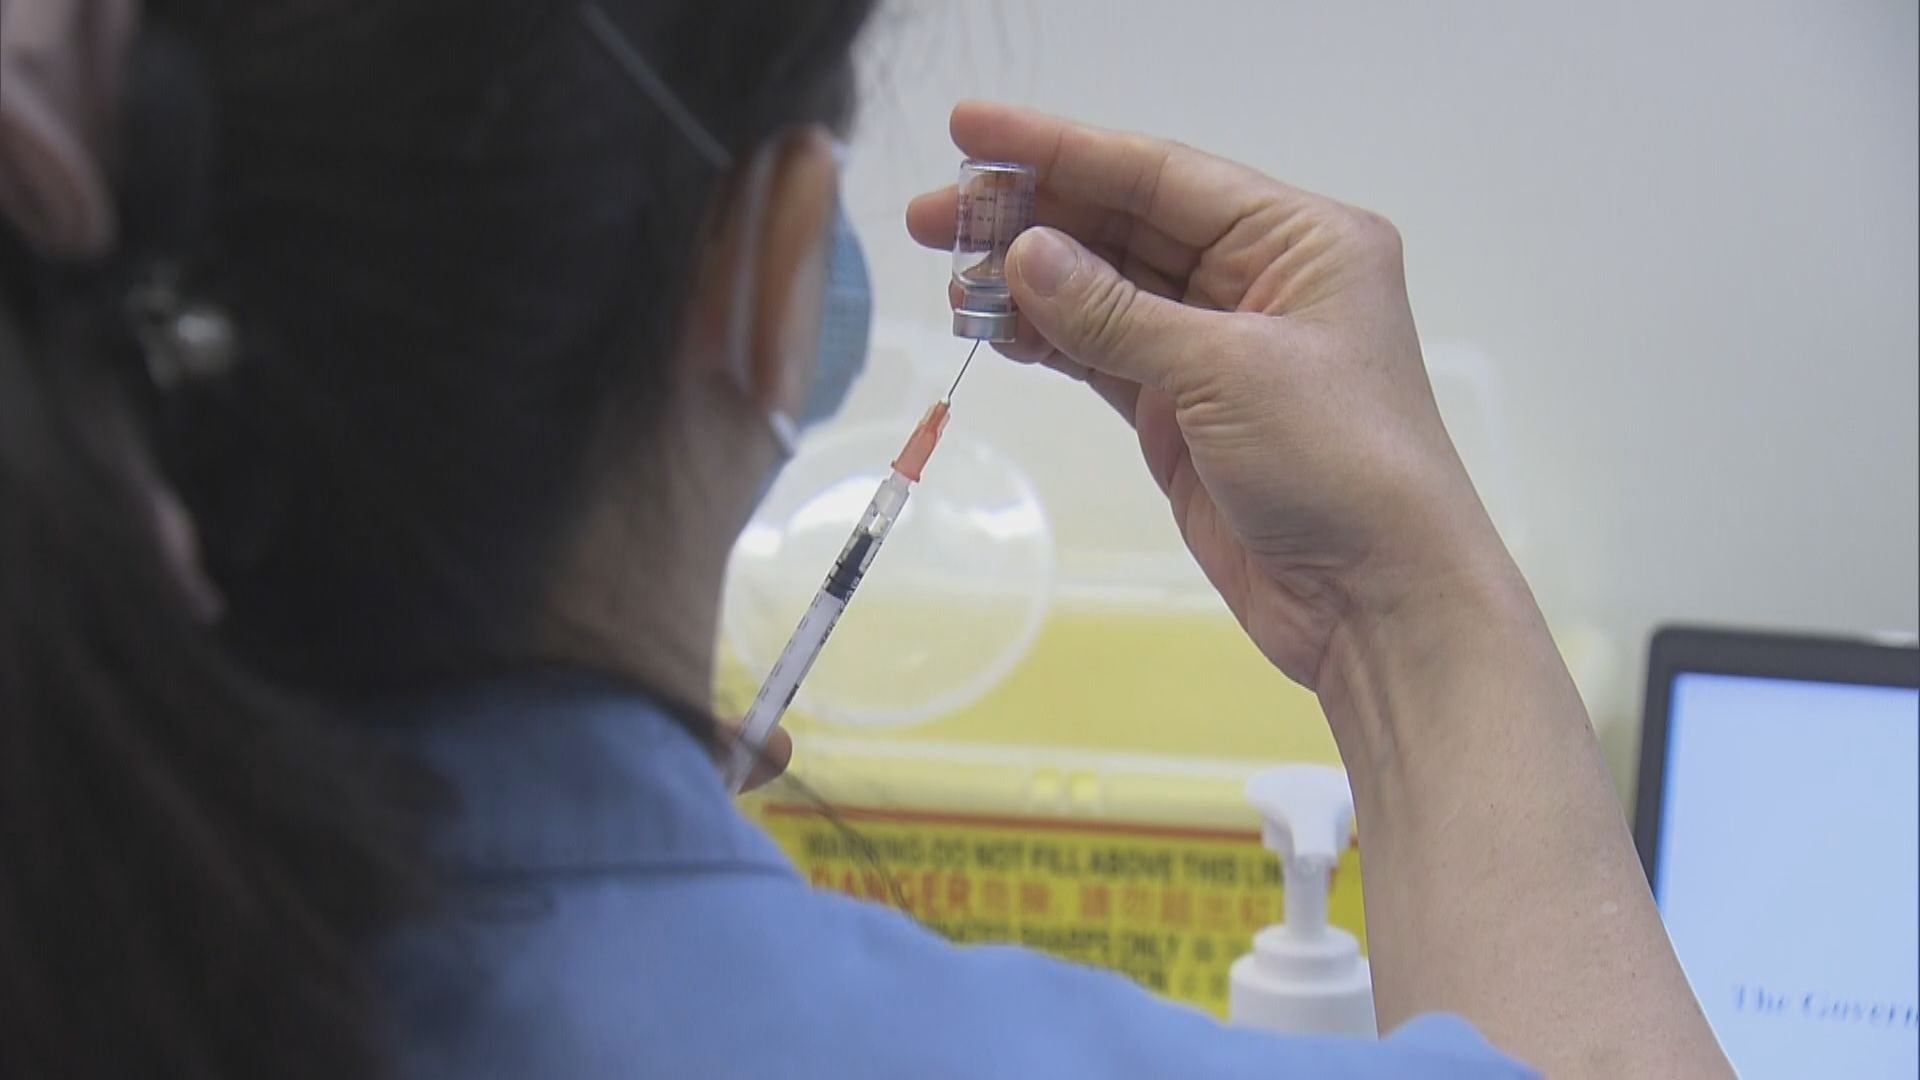 過去一周衞生署共接獲46宗接種新冠疫苗異常事件報告